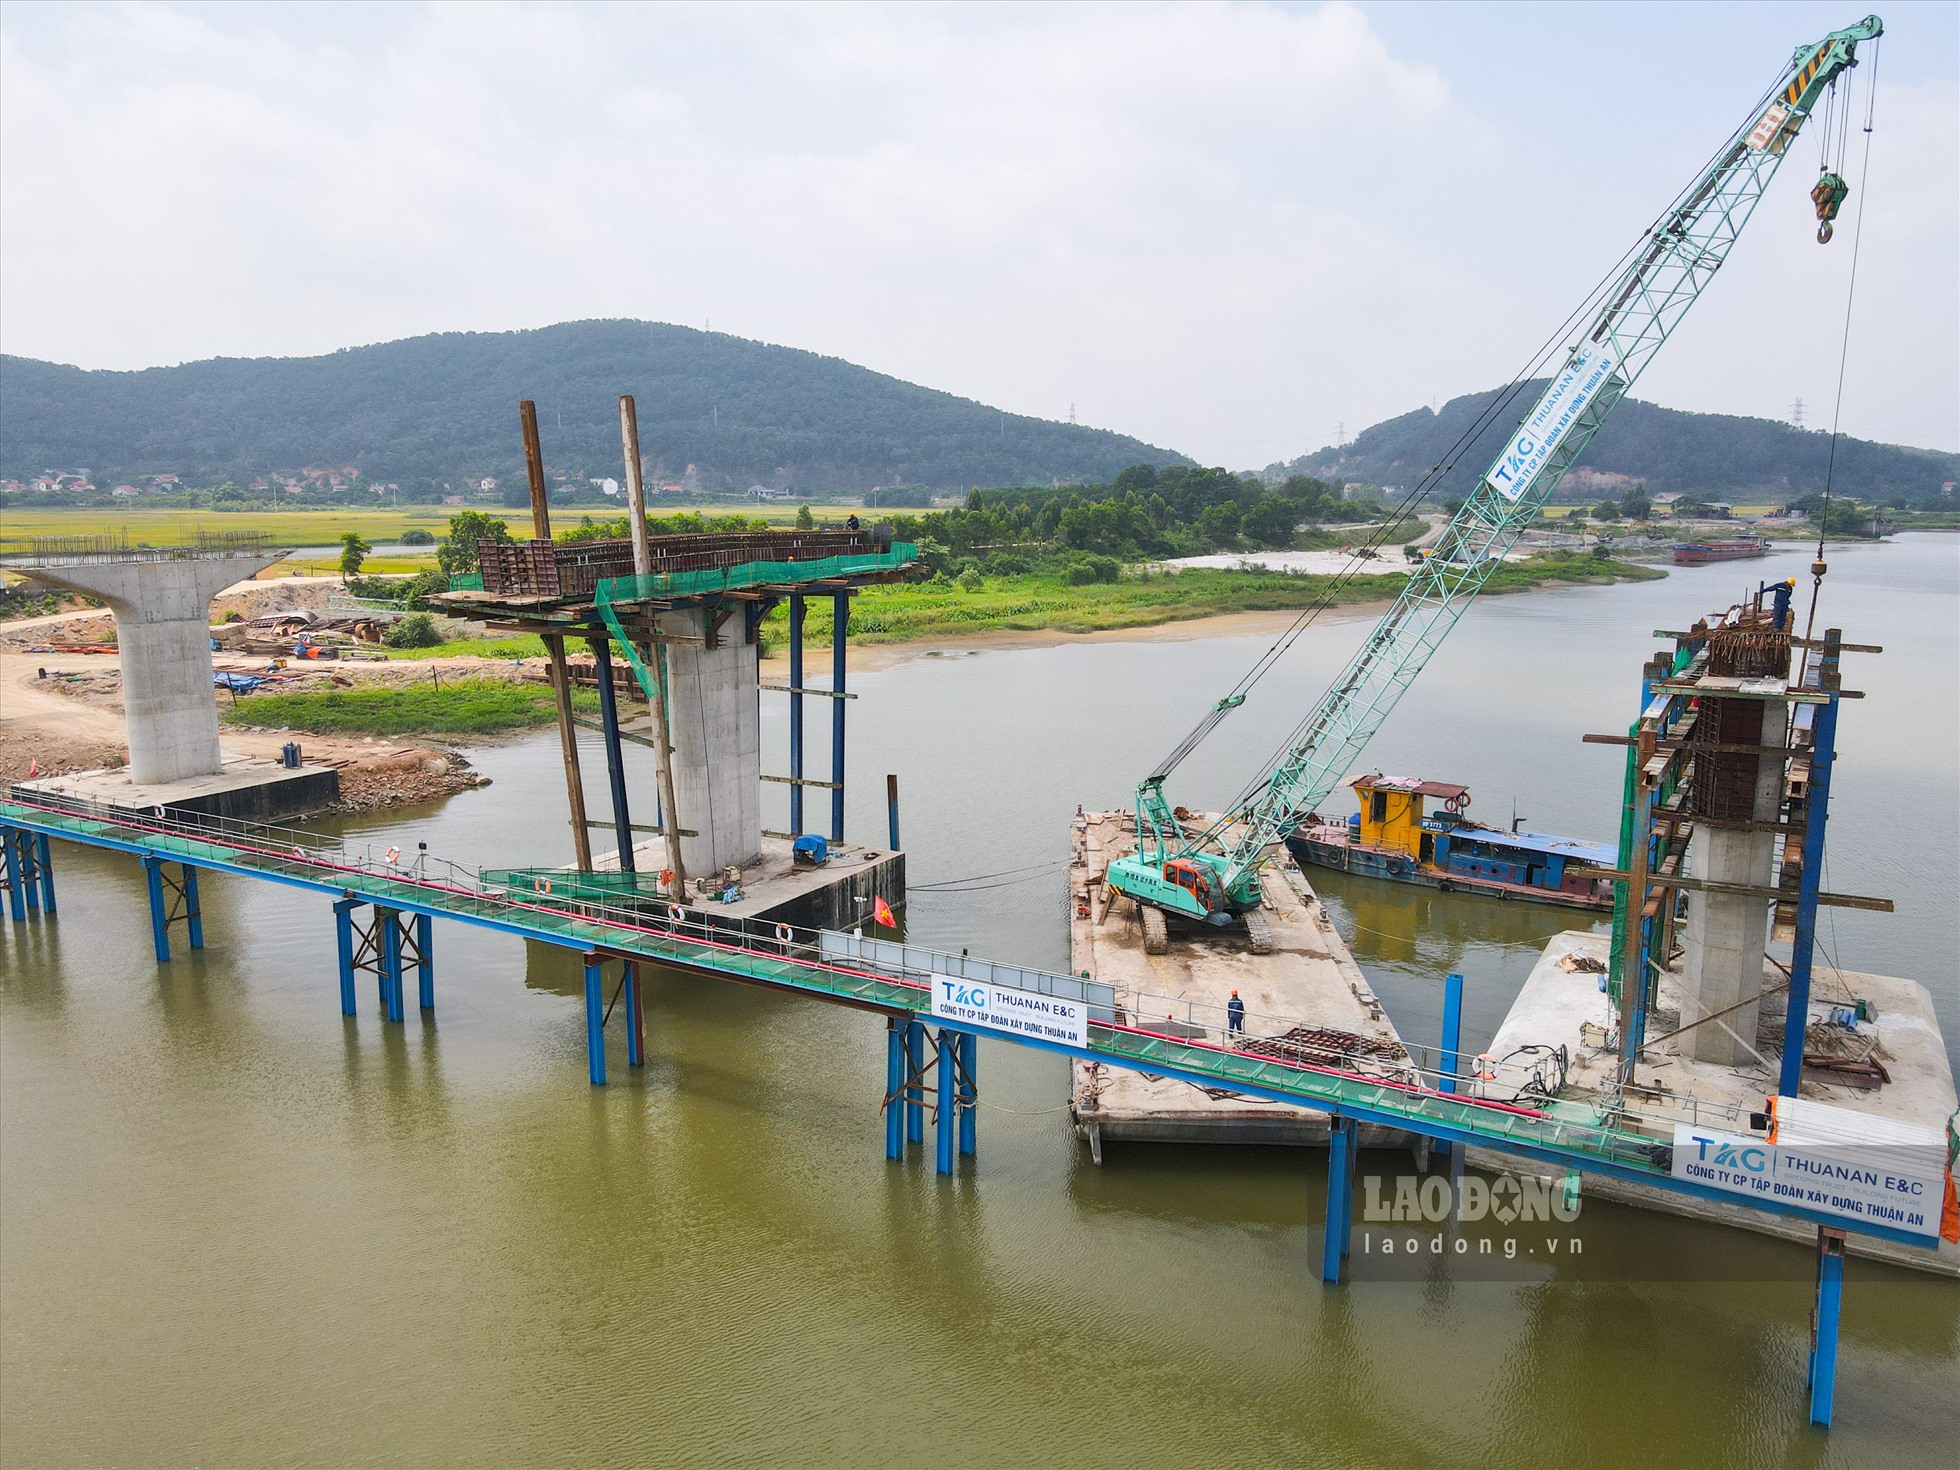 Khi hoàn thành, cầu Đồng Việt được kỳ vọng thúc đẩy lưu thông hàng hóa, phát triển du lịch; tạo điều kiện thu hút các nhà đầu tư vào các khu, cụm công nghiệp của tỉnh Bắc Giang. Đồng thời góp phần hoàn thiện hạ tầng giao thông theo định hướng quy hoạch phát triển giao thông - vận tải tỉnh Bắc Giang đến năm 2030, tầm nhìn đến năm 2050.